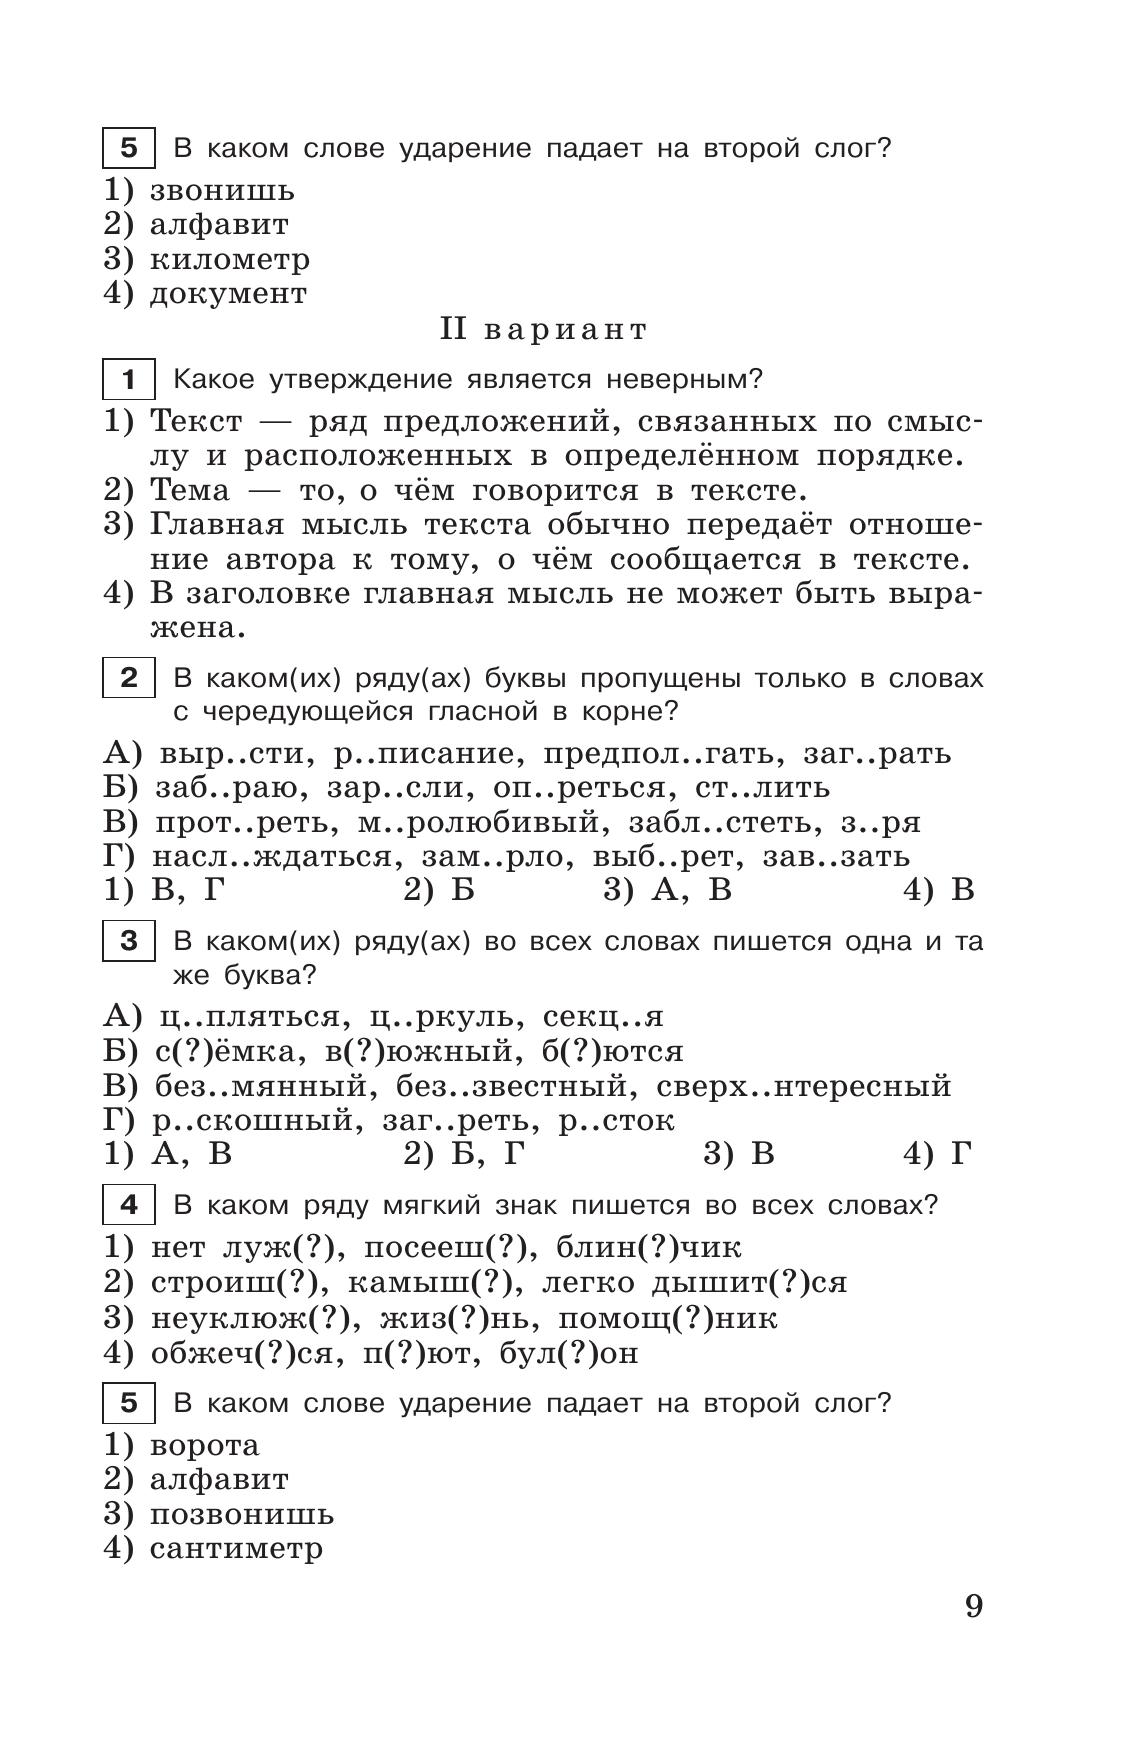 Тестовые задания по русскому языку. 6 класс. 11